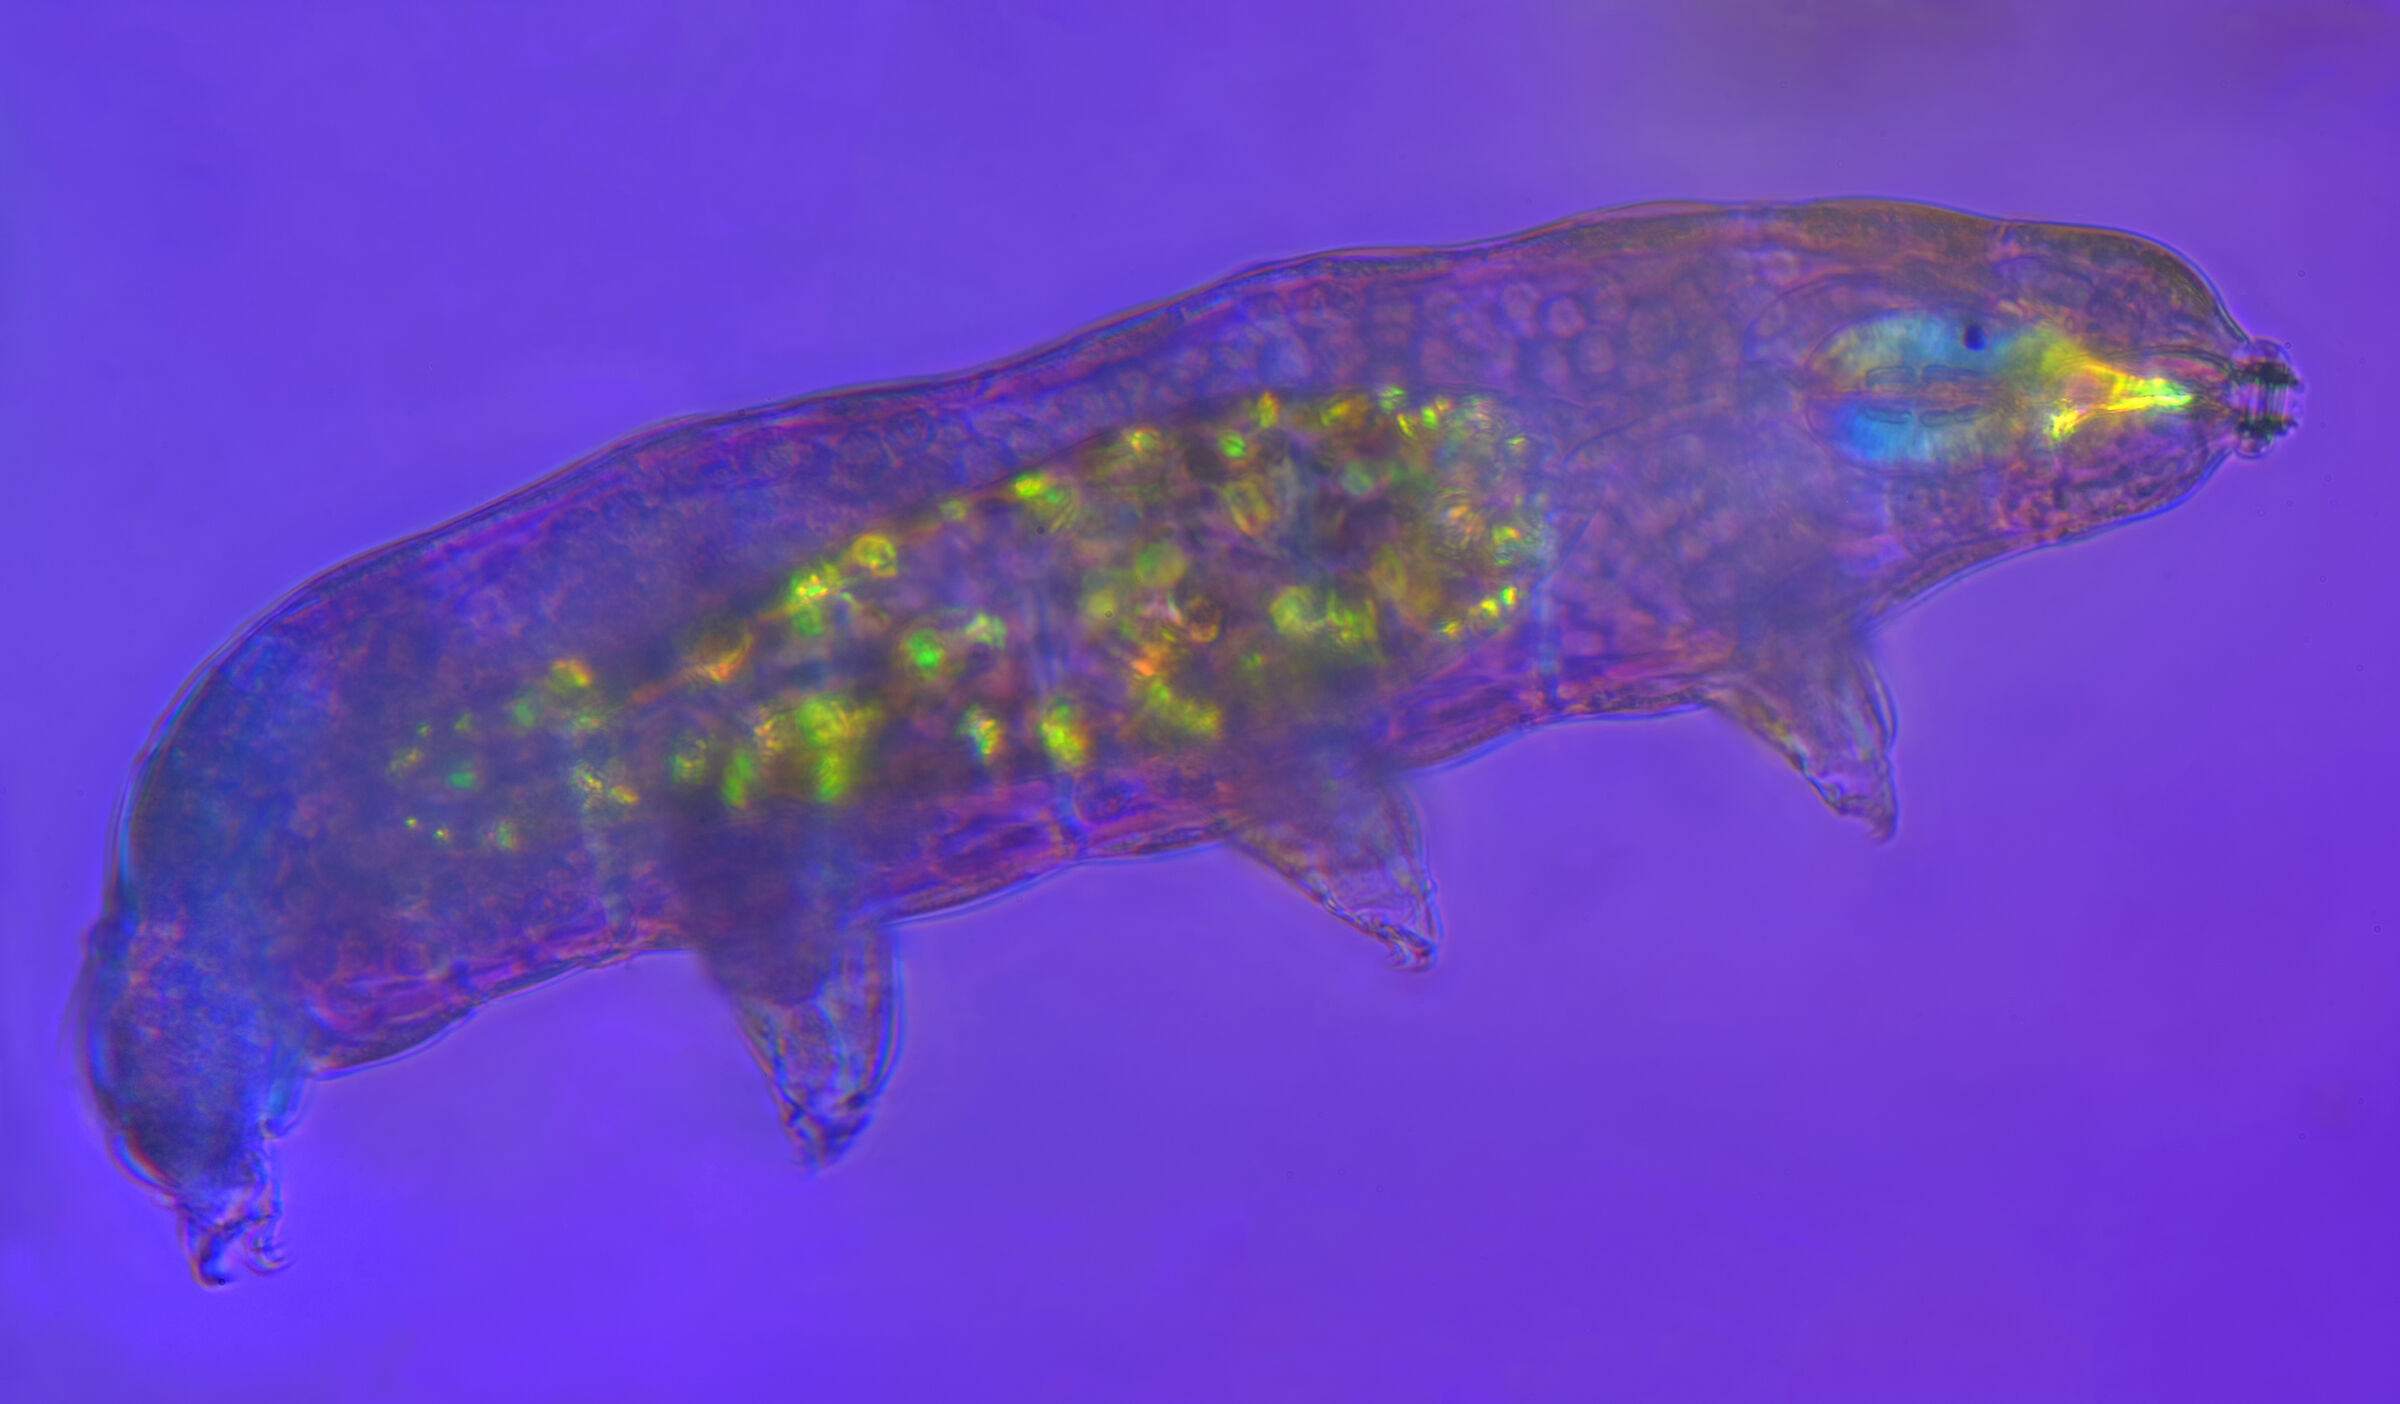 Tardigrade macrobiotidae in polarized light...